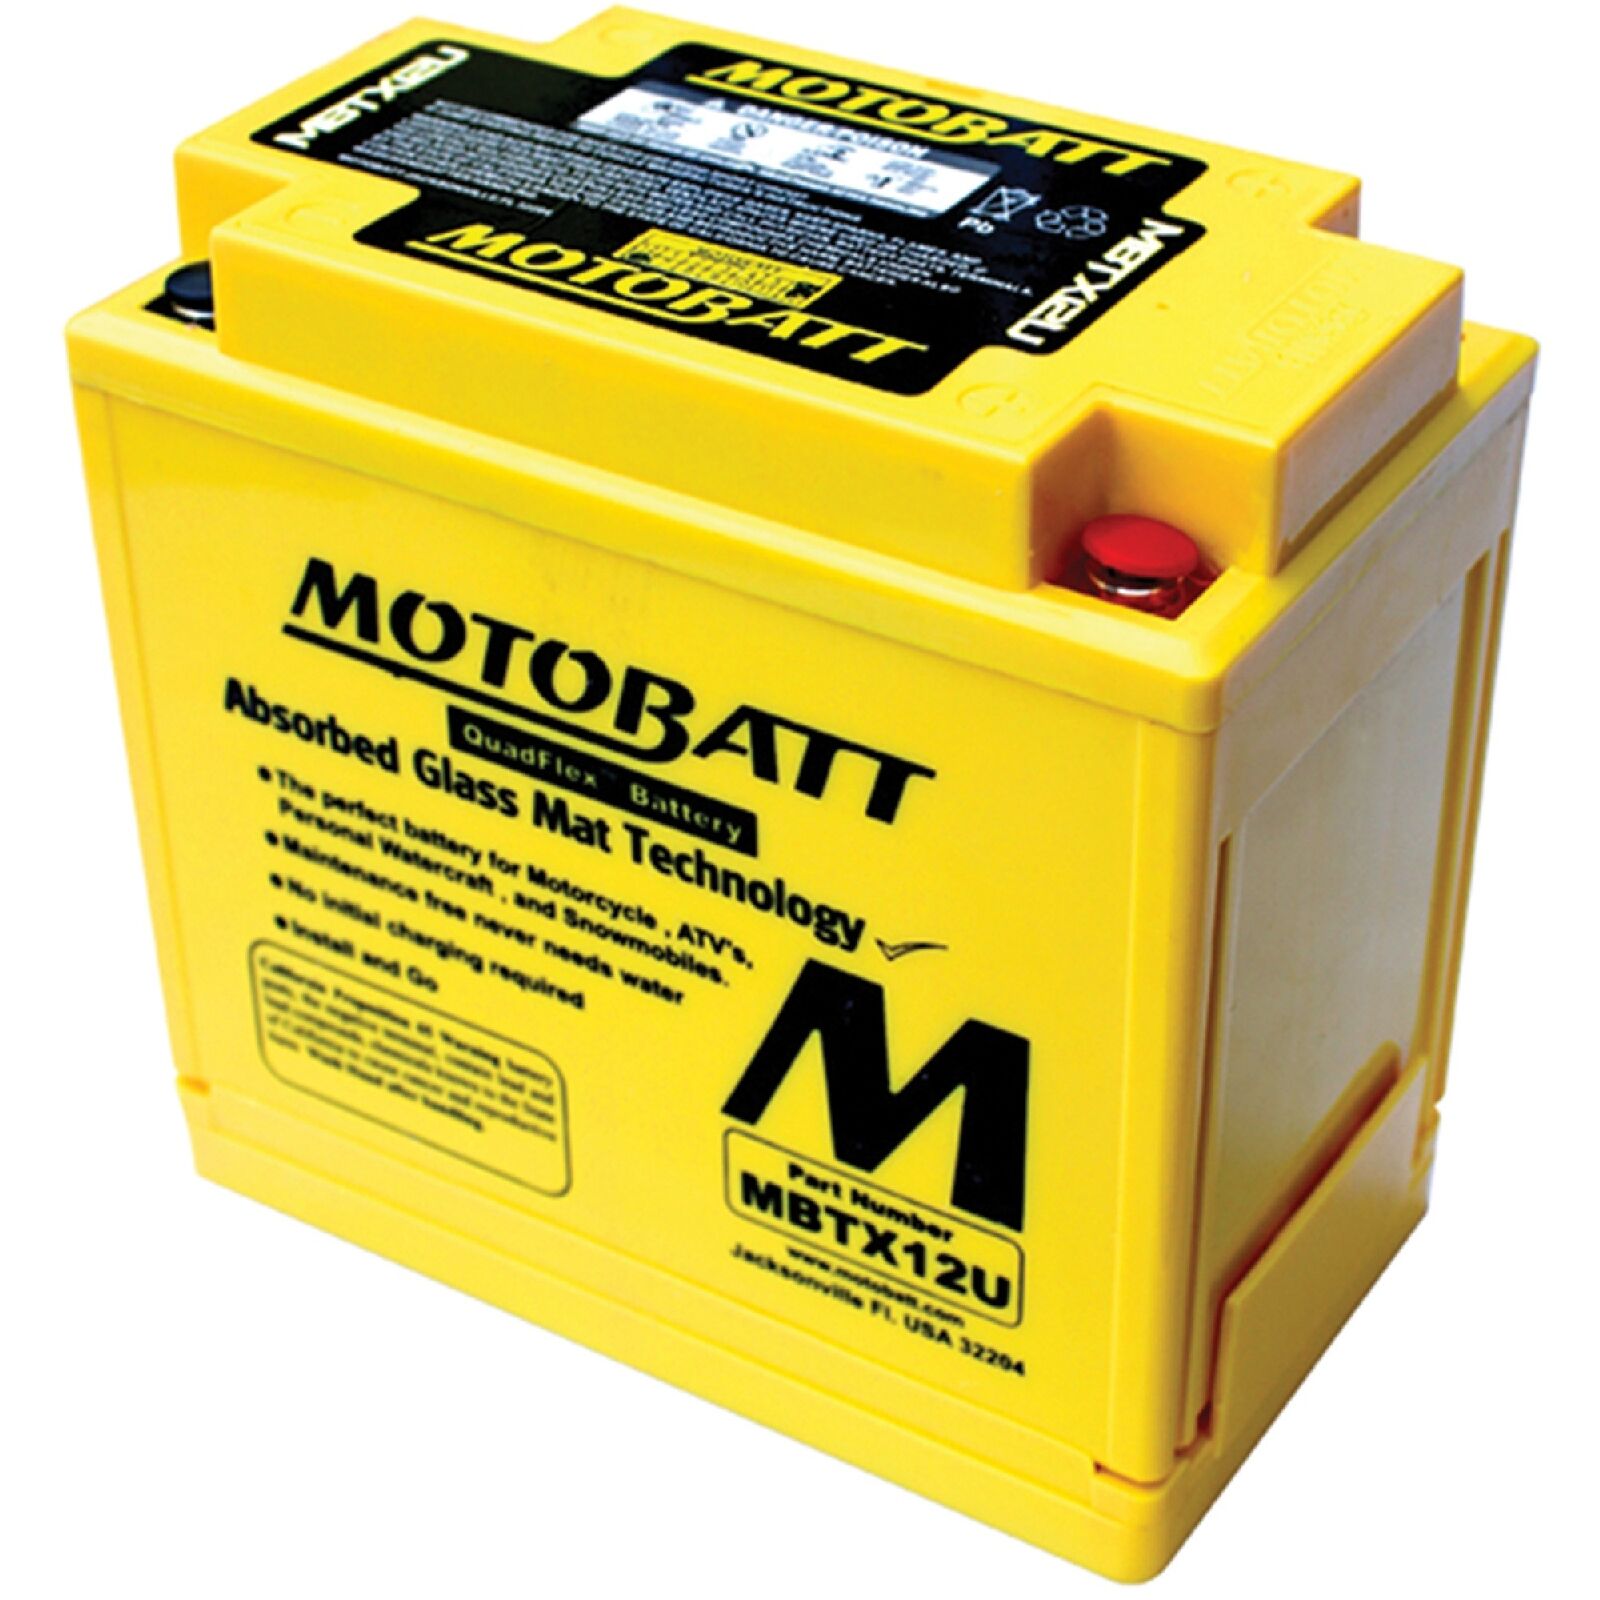 Motobatt Battery for Honda GL1500 Valkyrie 1500cc 97-03 MBTX12U